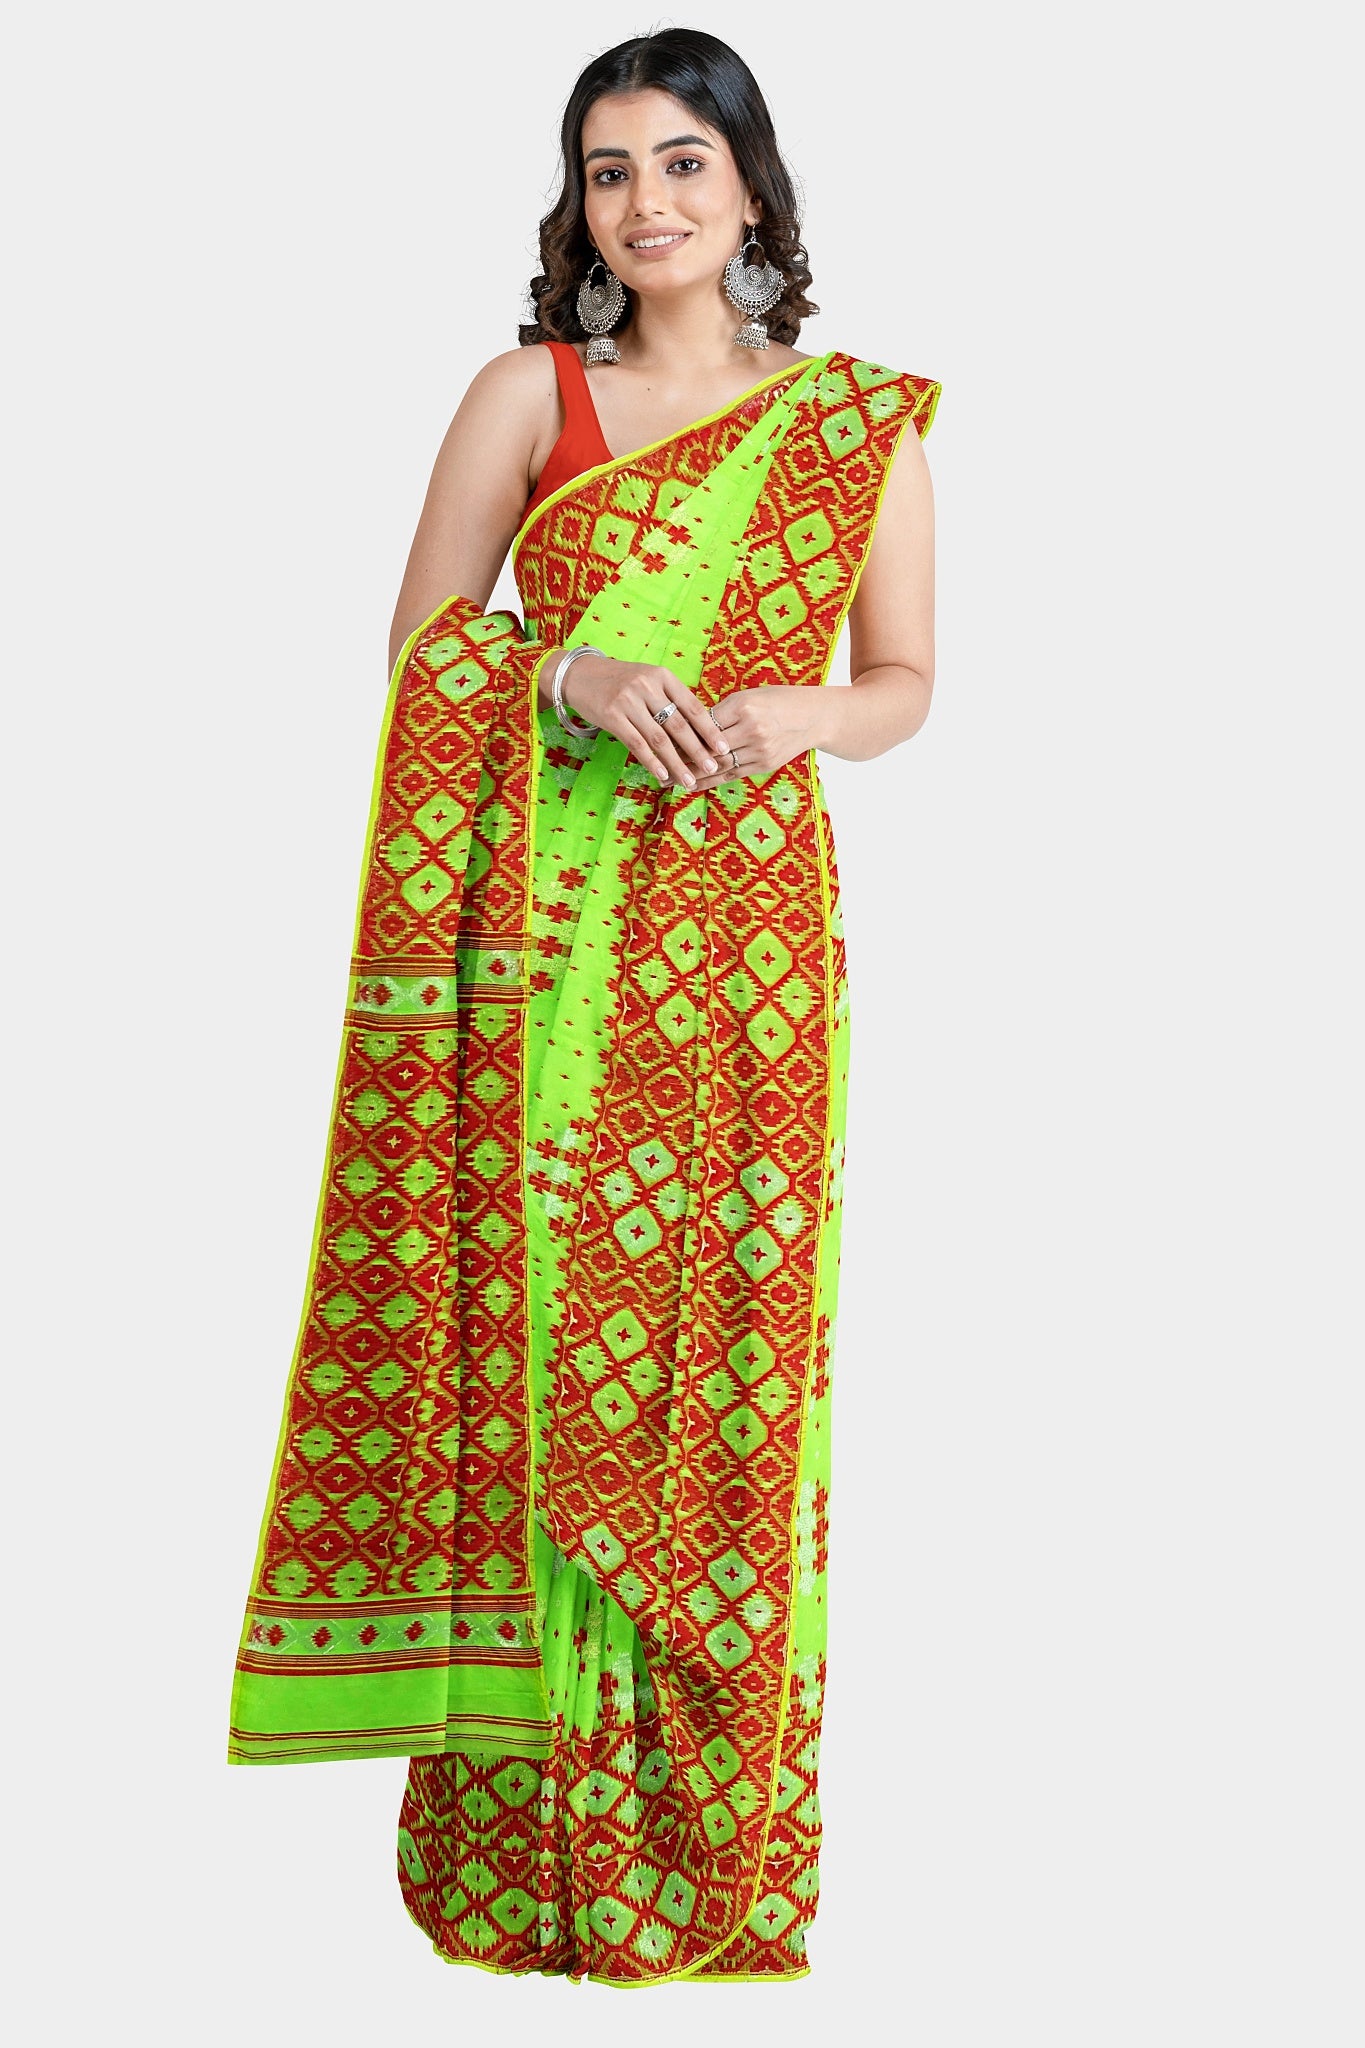 Centorganic Dhakai Soft Jamdani Bengal saree for women, All Over Weaving Barfi Design, Without Blouse Piece